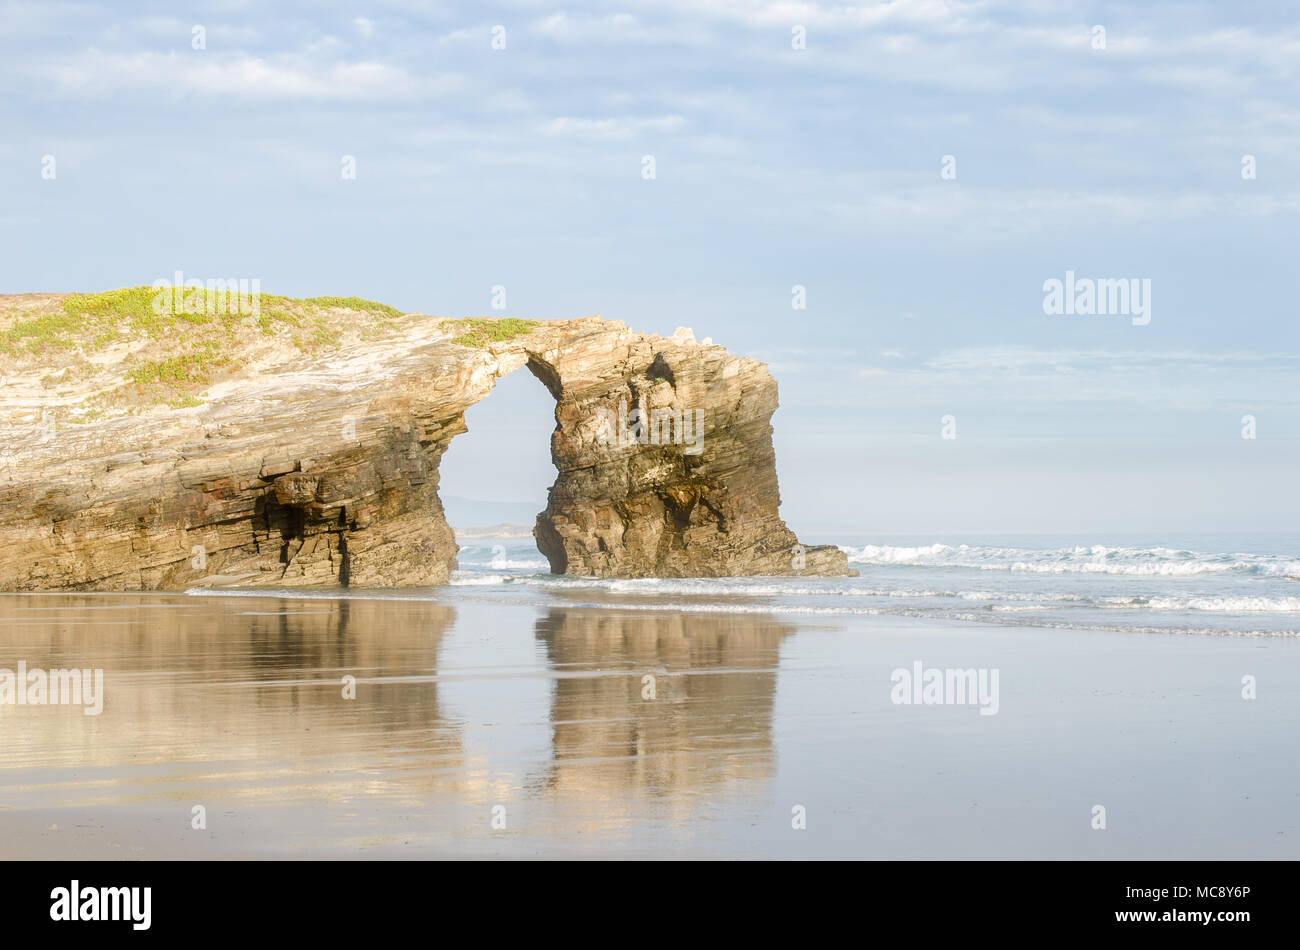 Comme à l'arche naturelle Catedrais beach - c'est le nom touristique de Praia de Aguas Santas (plage des eaux saintes). La Galice, Espagne Banque D'Images